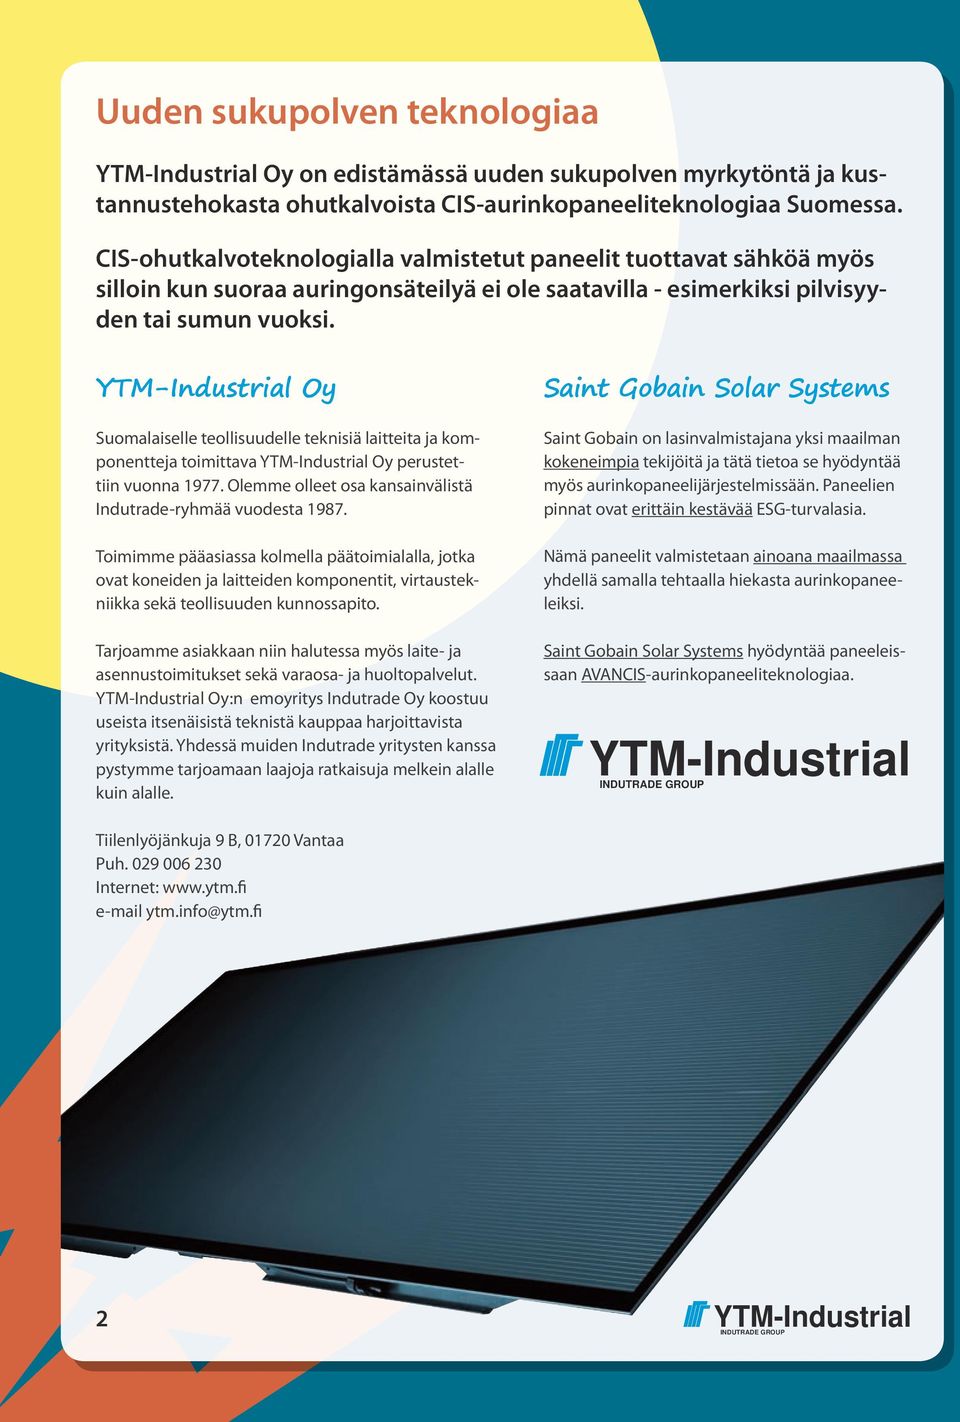 Oy Suomalaiselle teollisuudelle teknisiä laitteita ja komponentteja toimittava Oy perustettiin vuonna 1977. Olemme olleet osa kansainvälistä Indutrade-ryhmää vuodesta 1987.